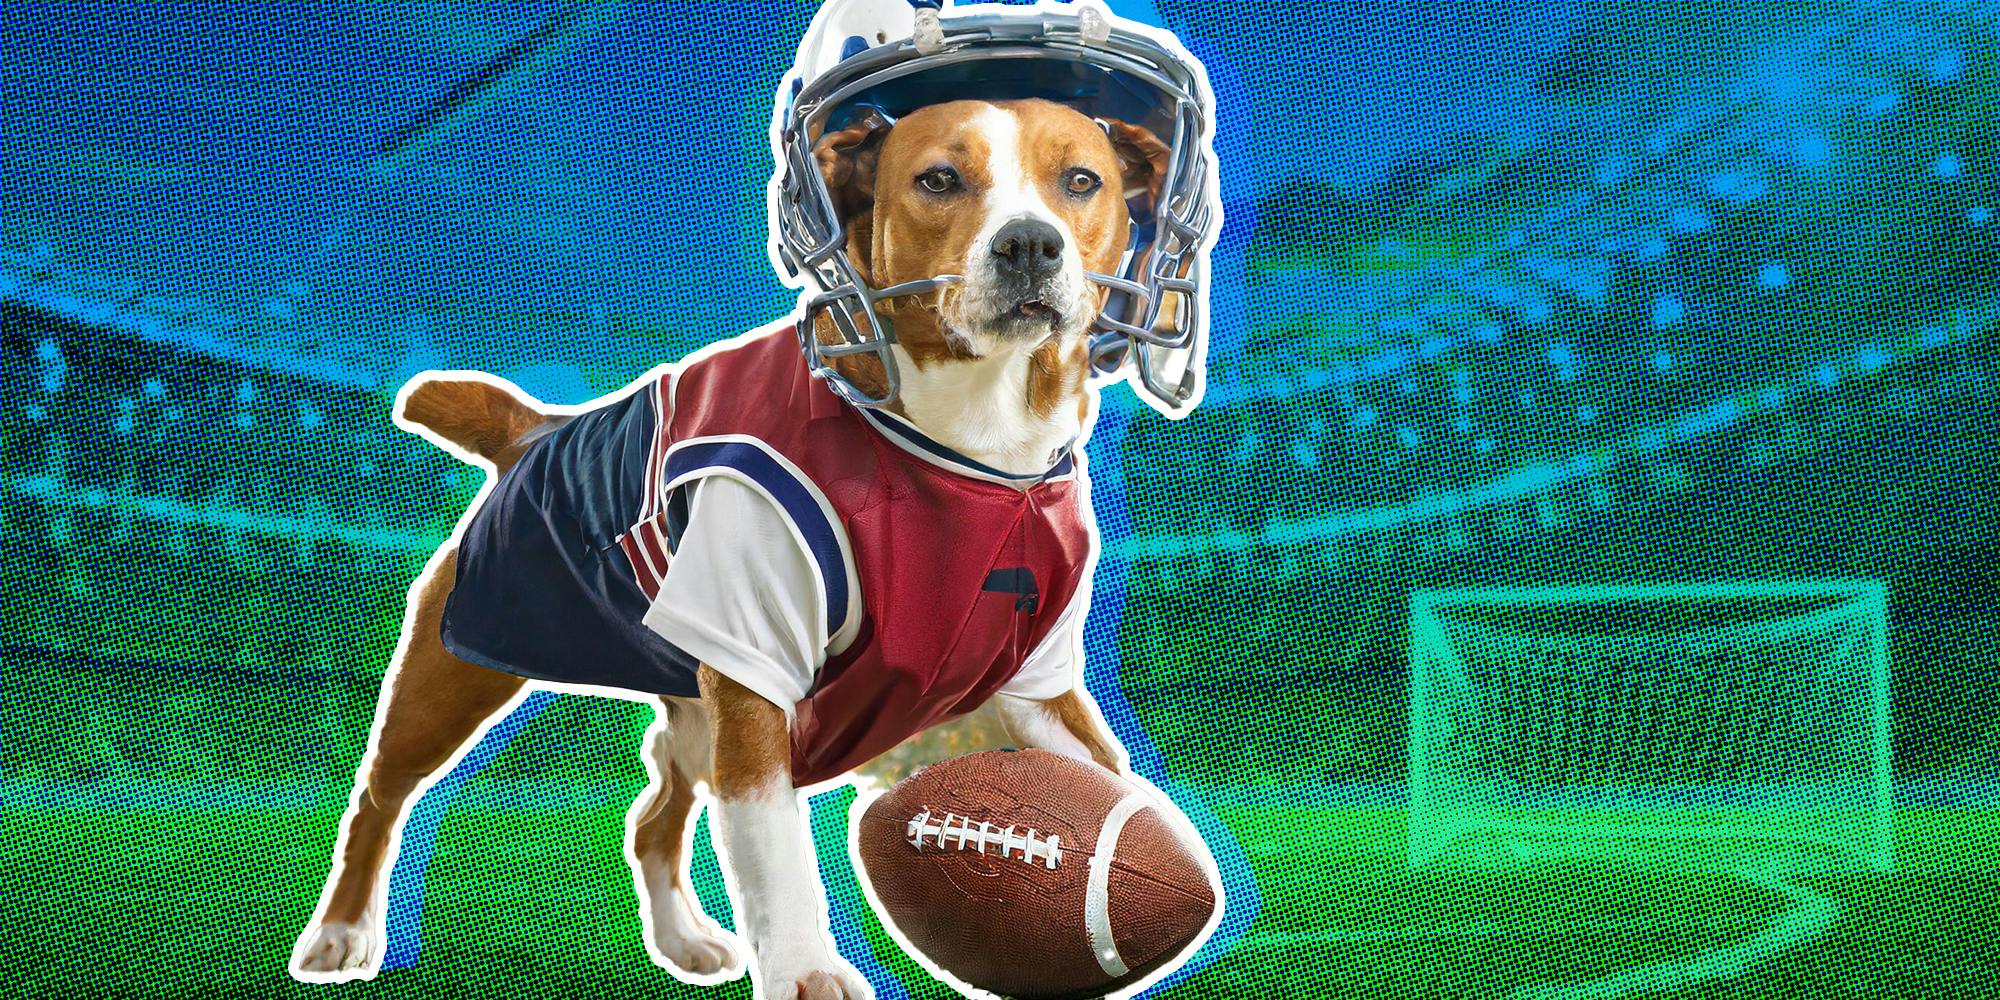 Dog playing football